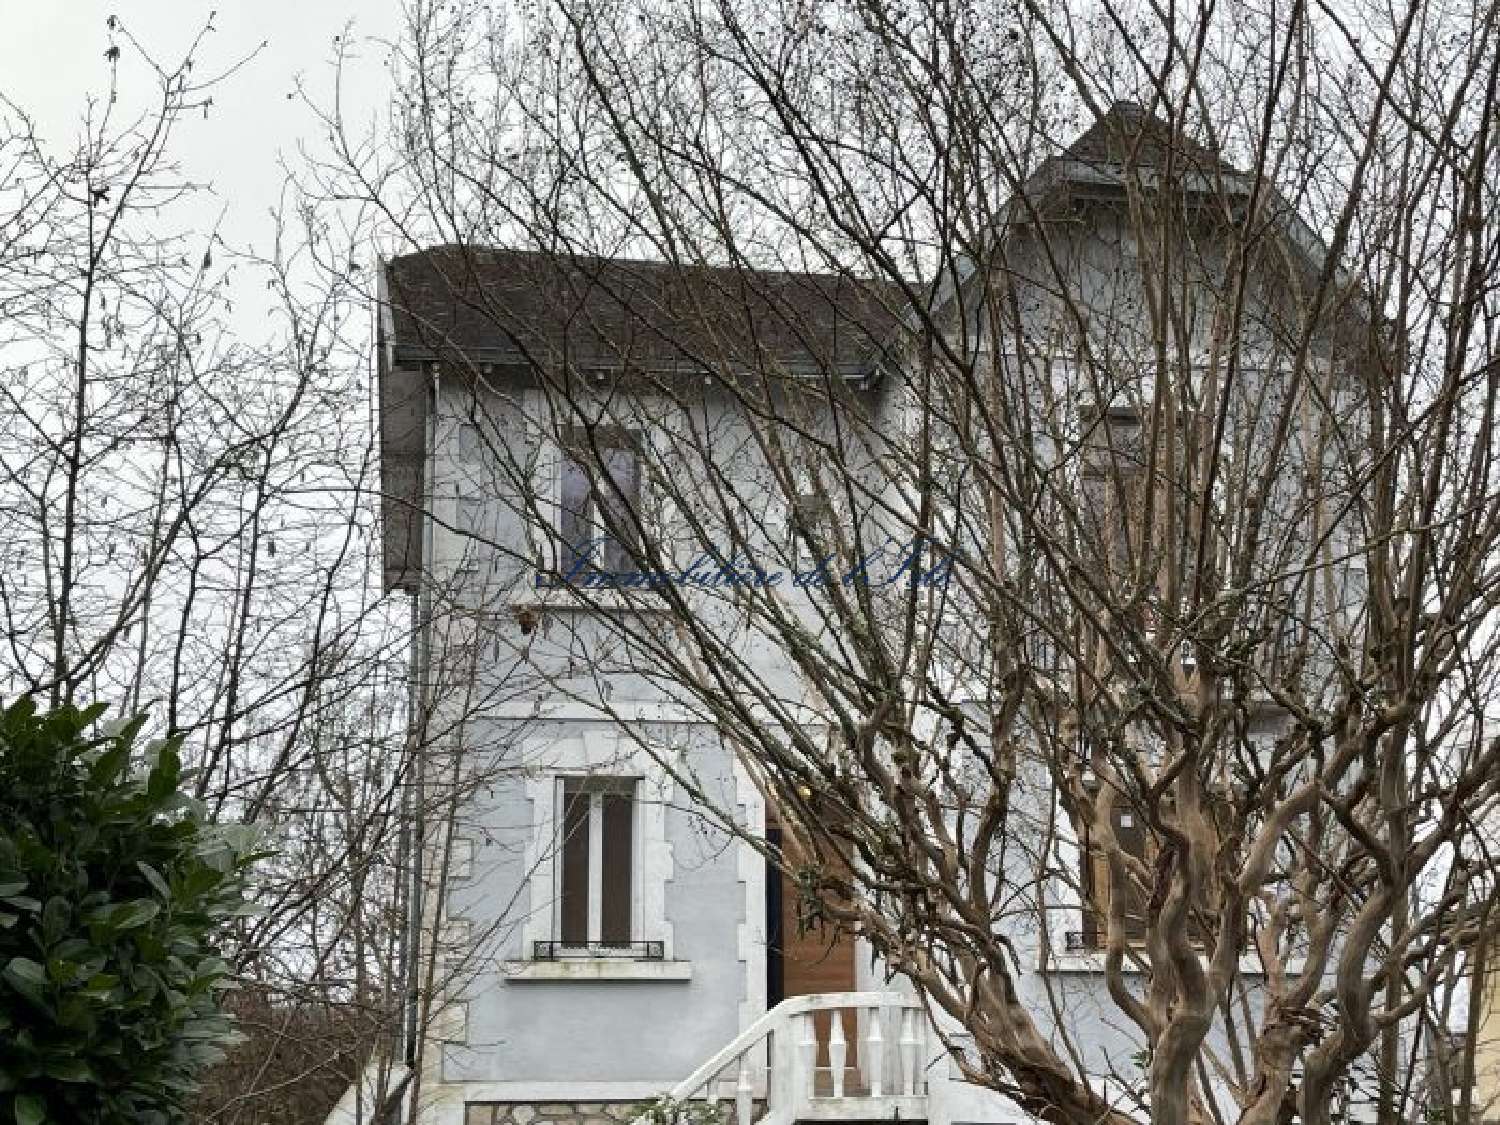  à vendre maison Périgueux Dordogne 1